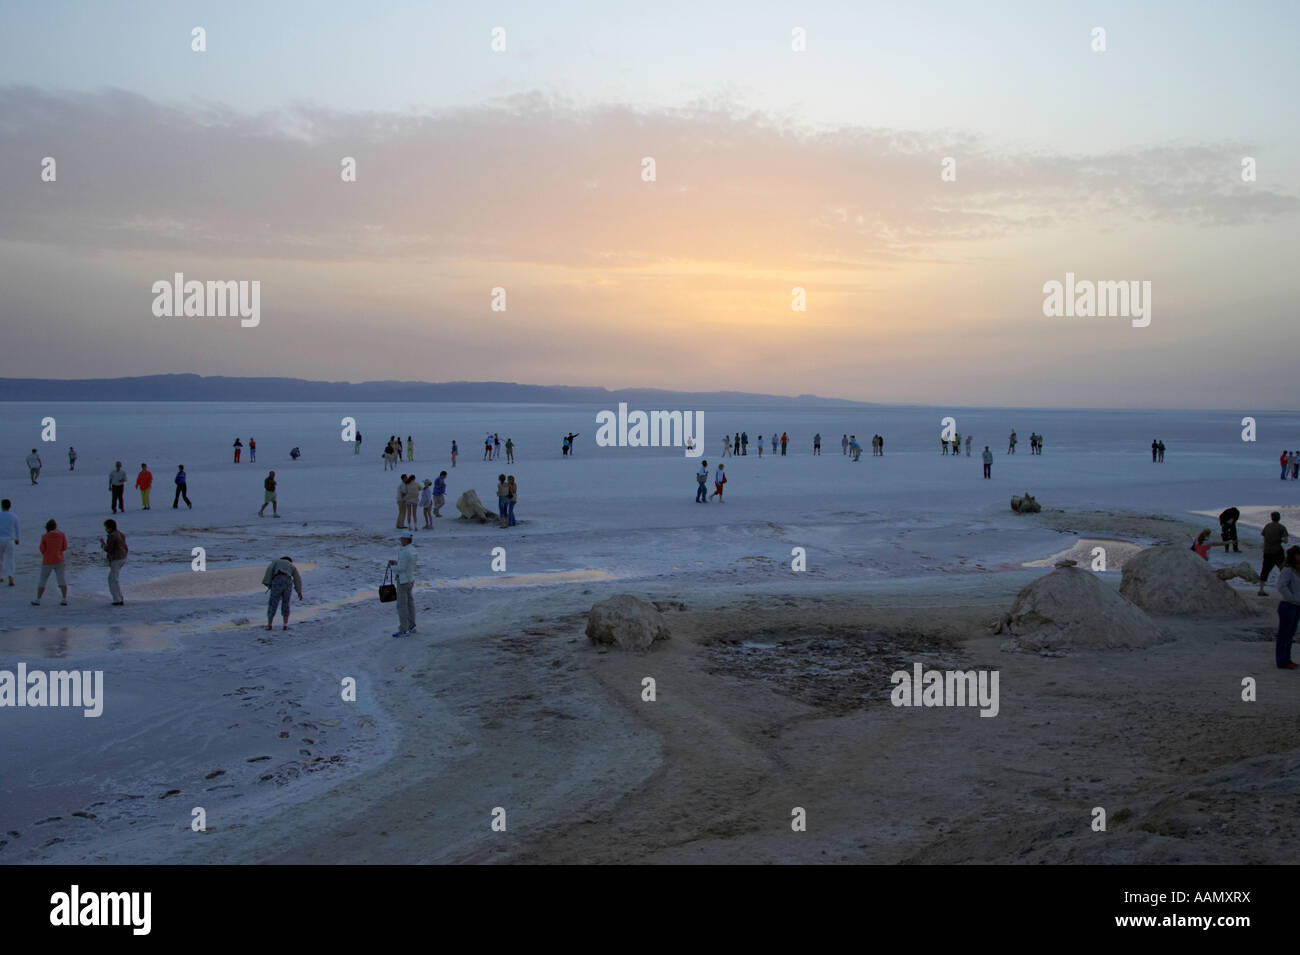 Accueillant des visiteurs de marcher sur les salines en attendant le lever du soleil la tunisie Chott el-jérid Banque D'Images